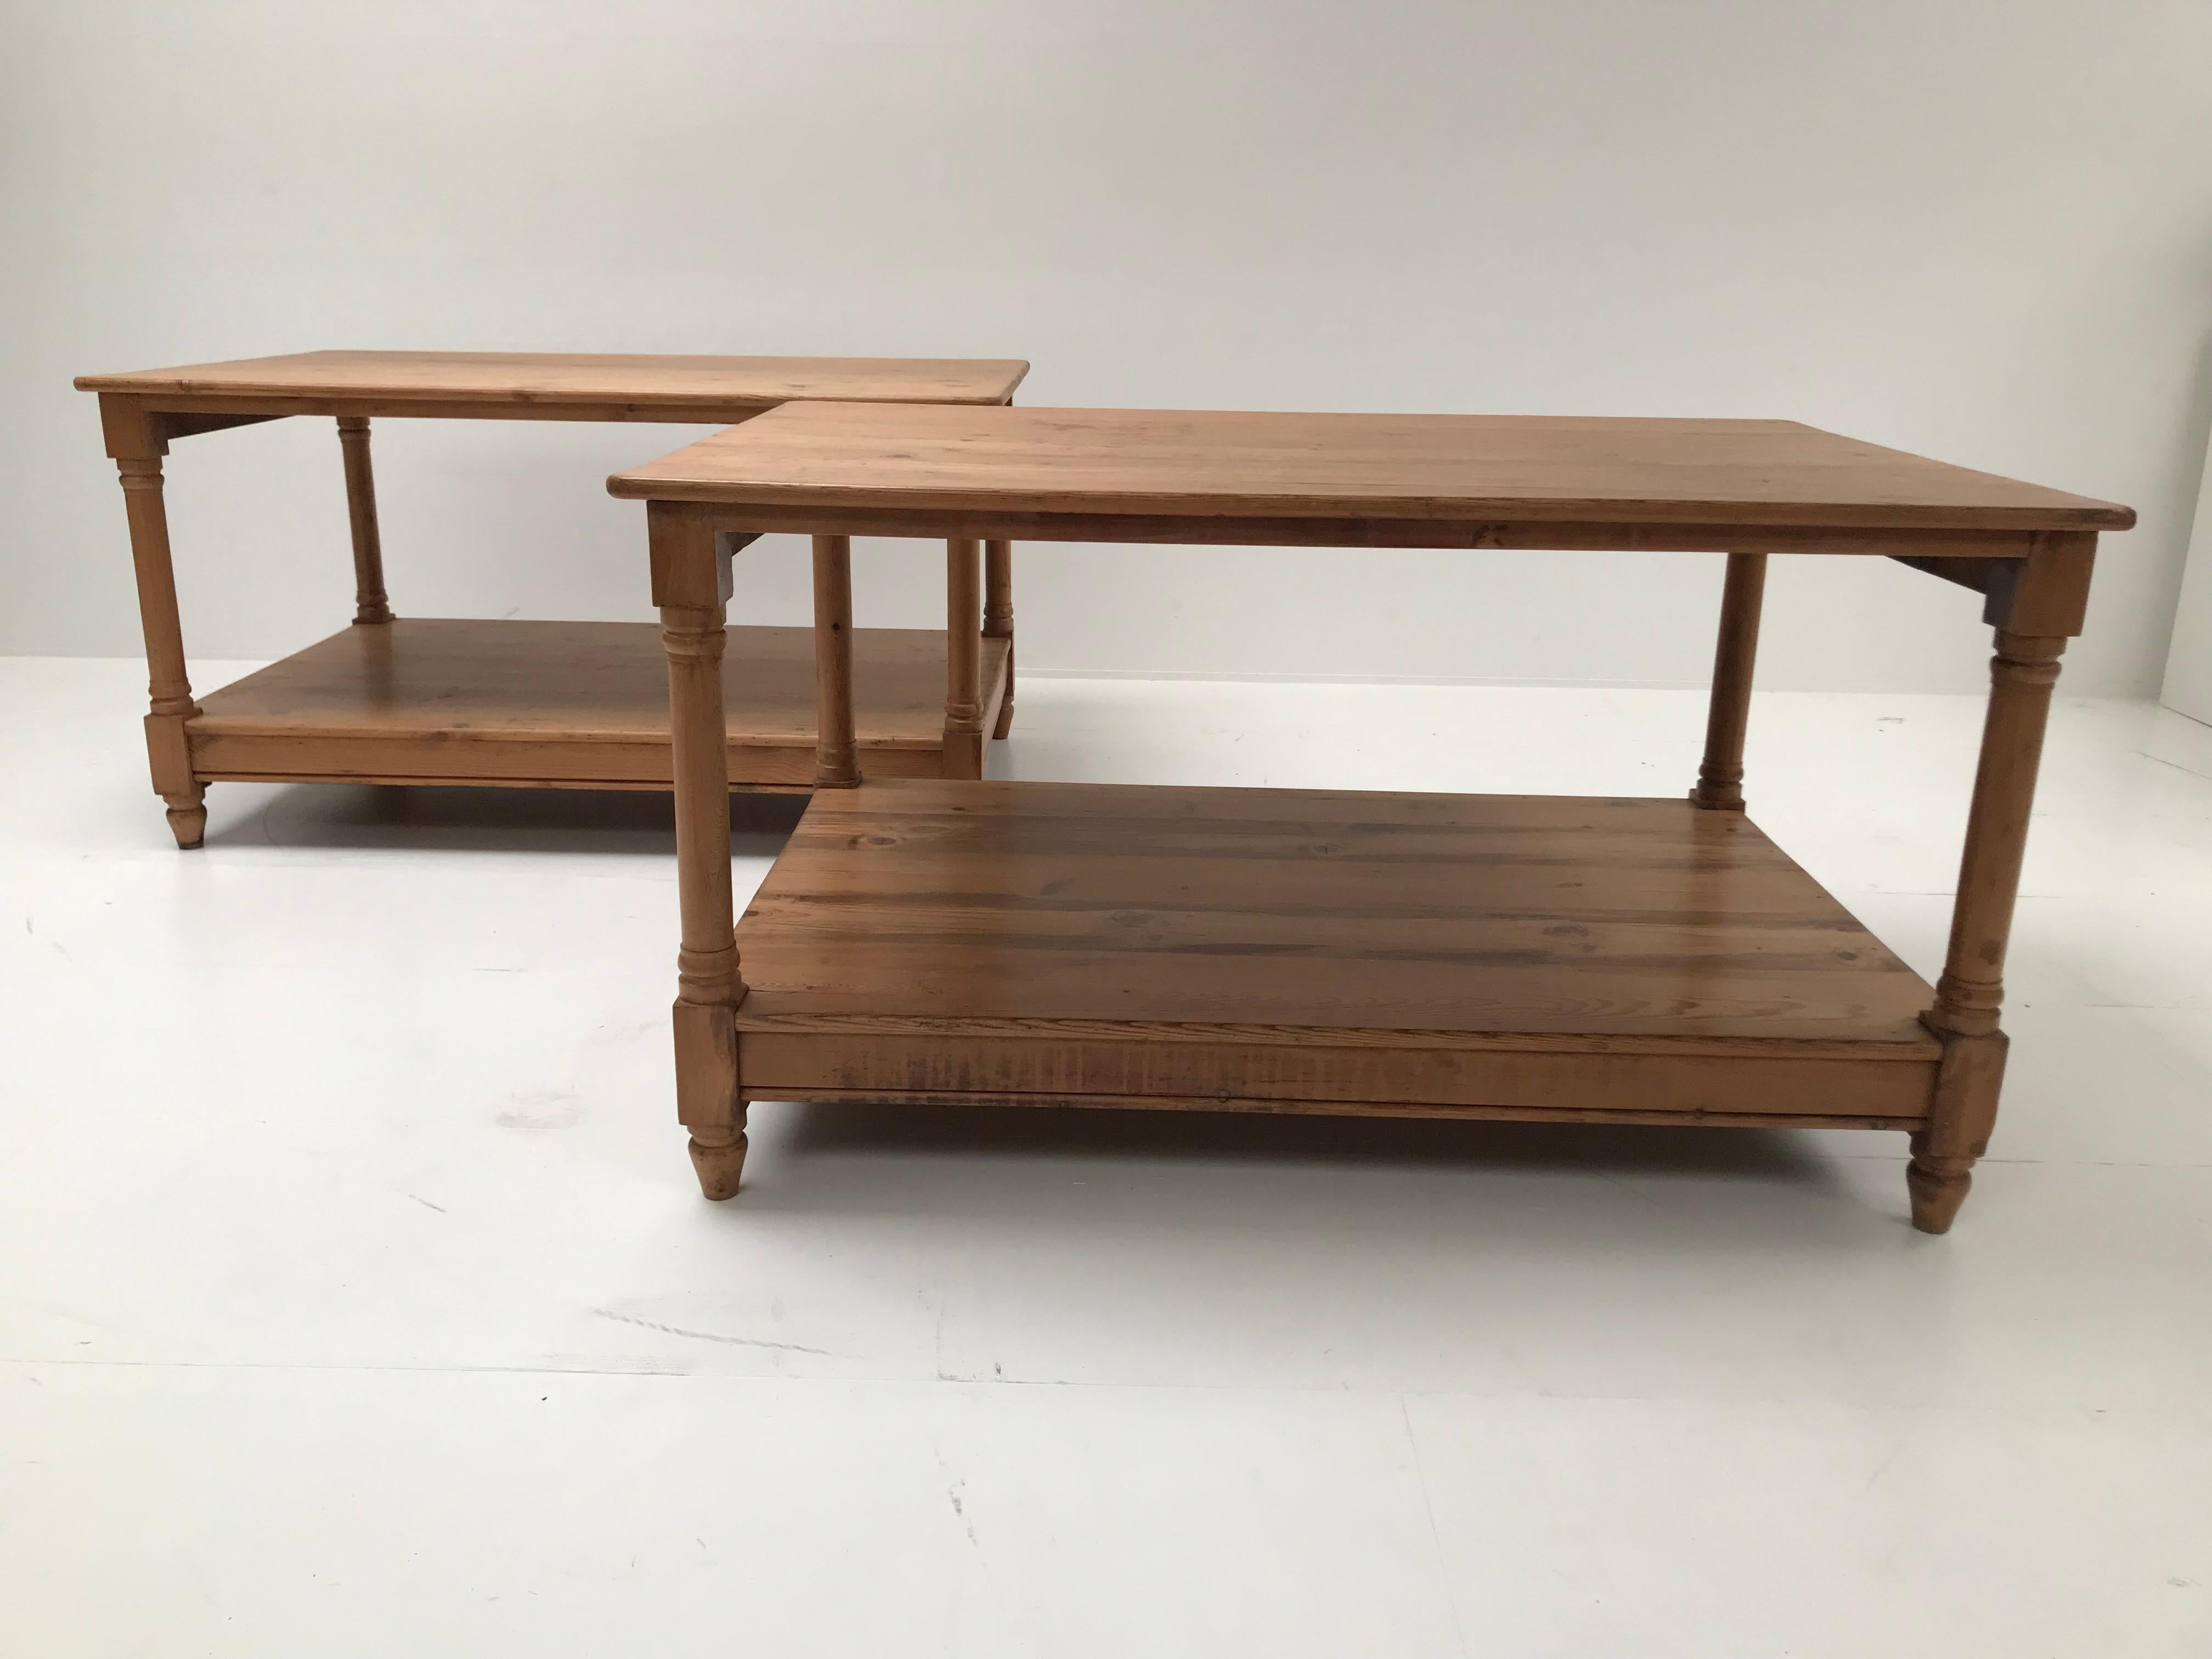 Elegante petite paire de tables de drapiers françaises,

dans un bois de pin blanchi avec une grande brillance et une patine du bois,

du sud de la France à partir de 1920 environ,

peut être utilisée à différentes fins, paire de tables très